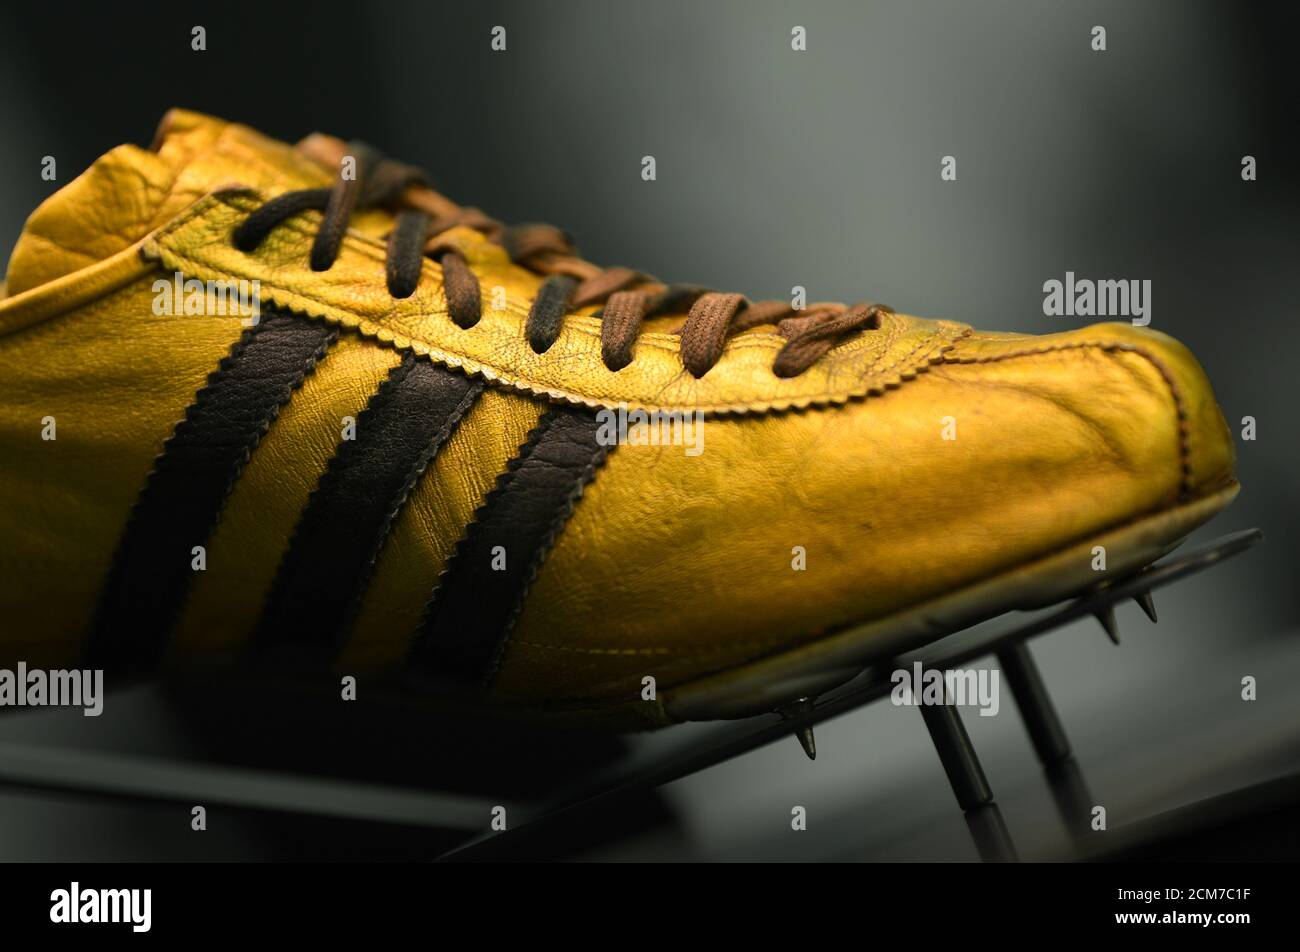 El zapato Adidas Azteca Gold 1968 se exhibe durante las celebraciones del  70º aniversario del fabricante alemán de ropa deportiva Adidas en la  exposición de historia de la compañía en Herzogenaurach, Alemania,